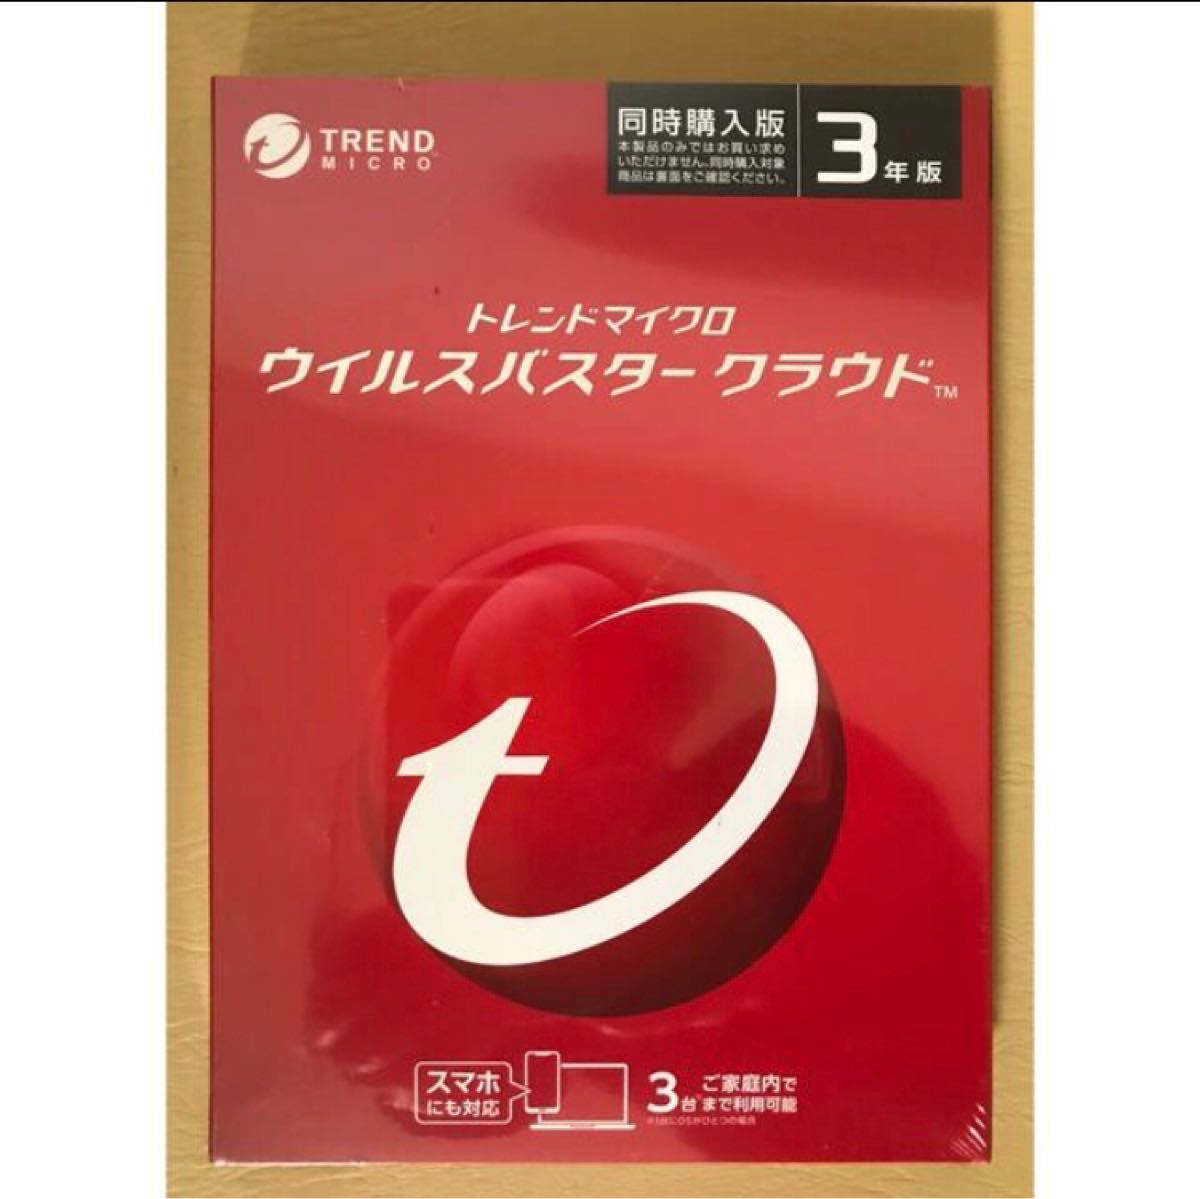 8240円 激安卸販売新品 ウイルスバスター クラウド 最新 3年 3台版 パッケージ DVD-ROM 版 Win Mac iOS Android対応PC